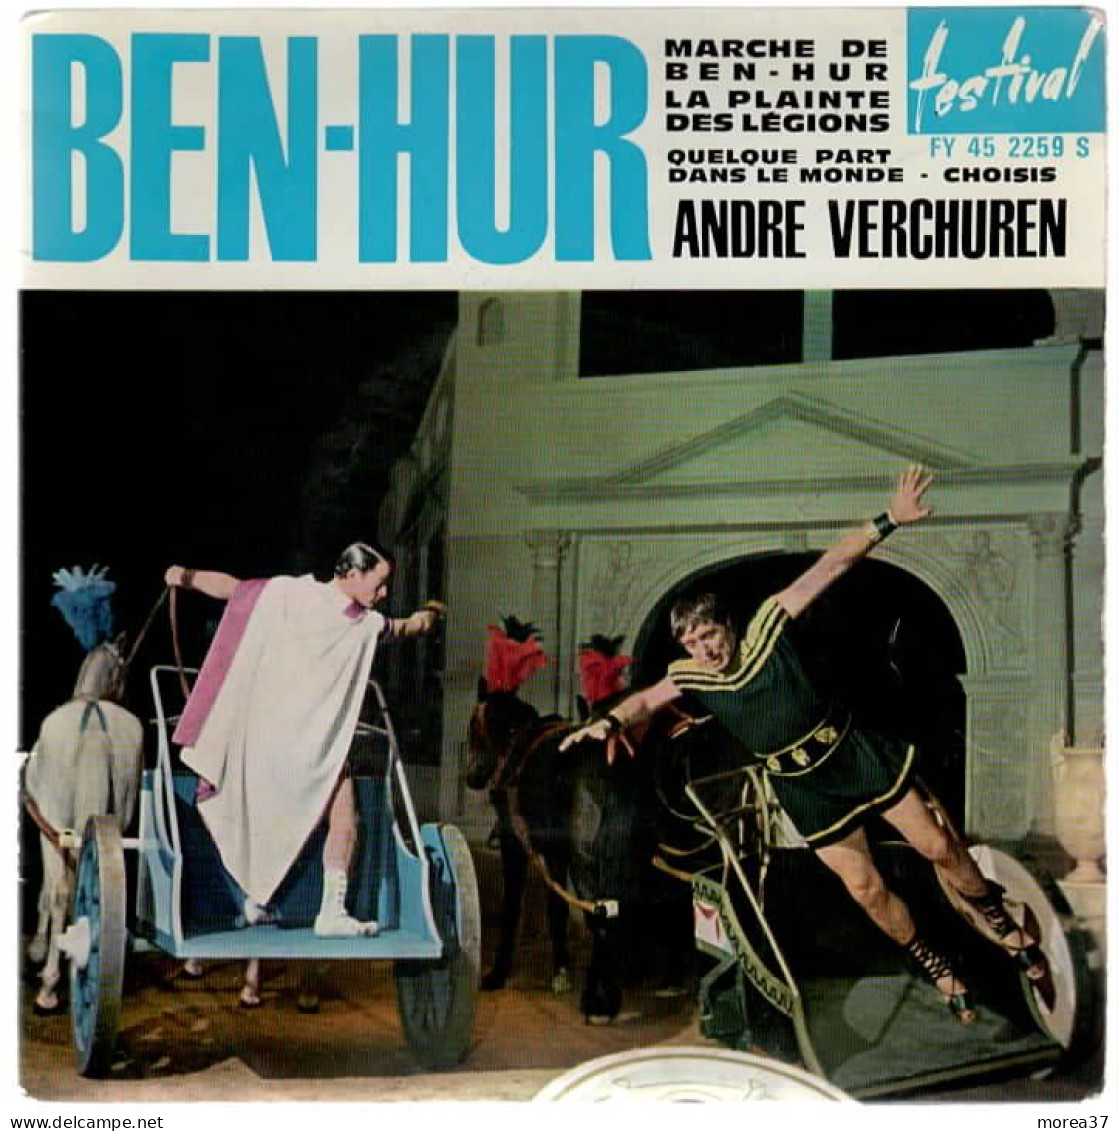 BEN HUR  Marche De Ben Hur      FESTIVAL  FY 45 2259 S - Soundtracks, Film Music